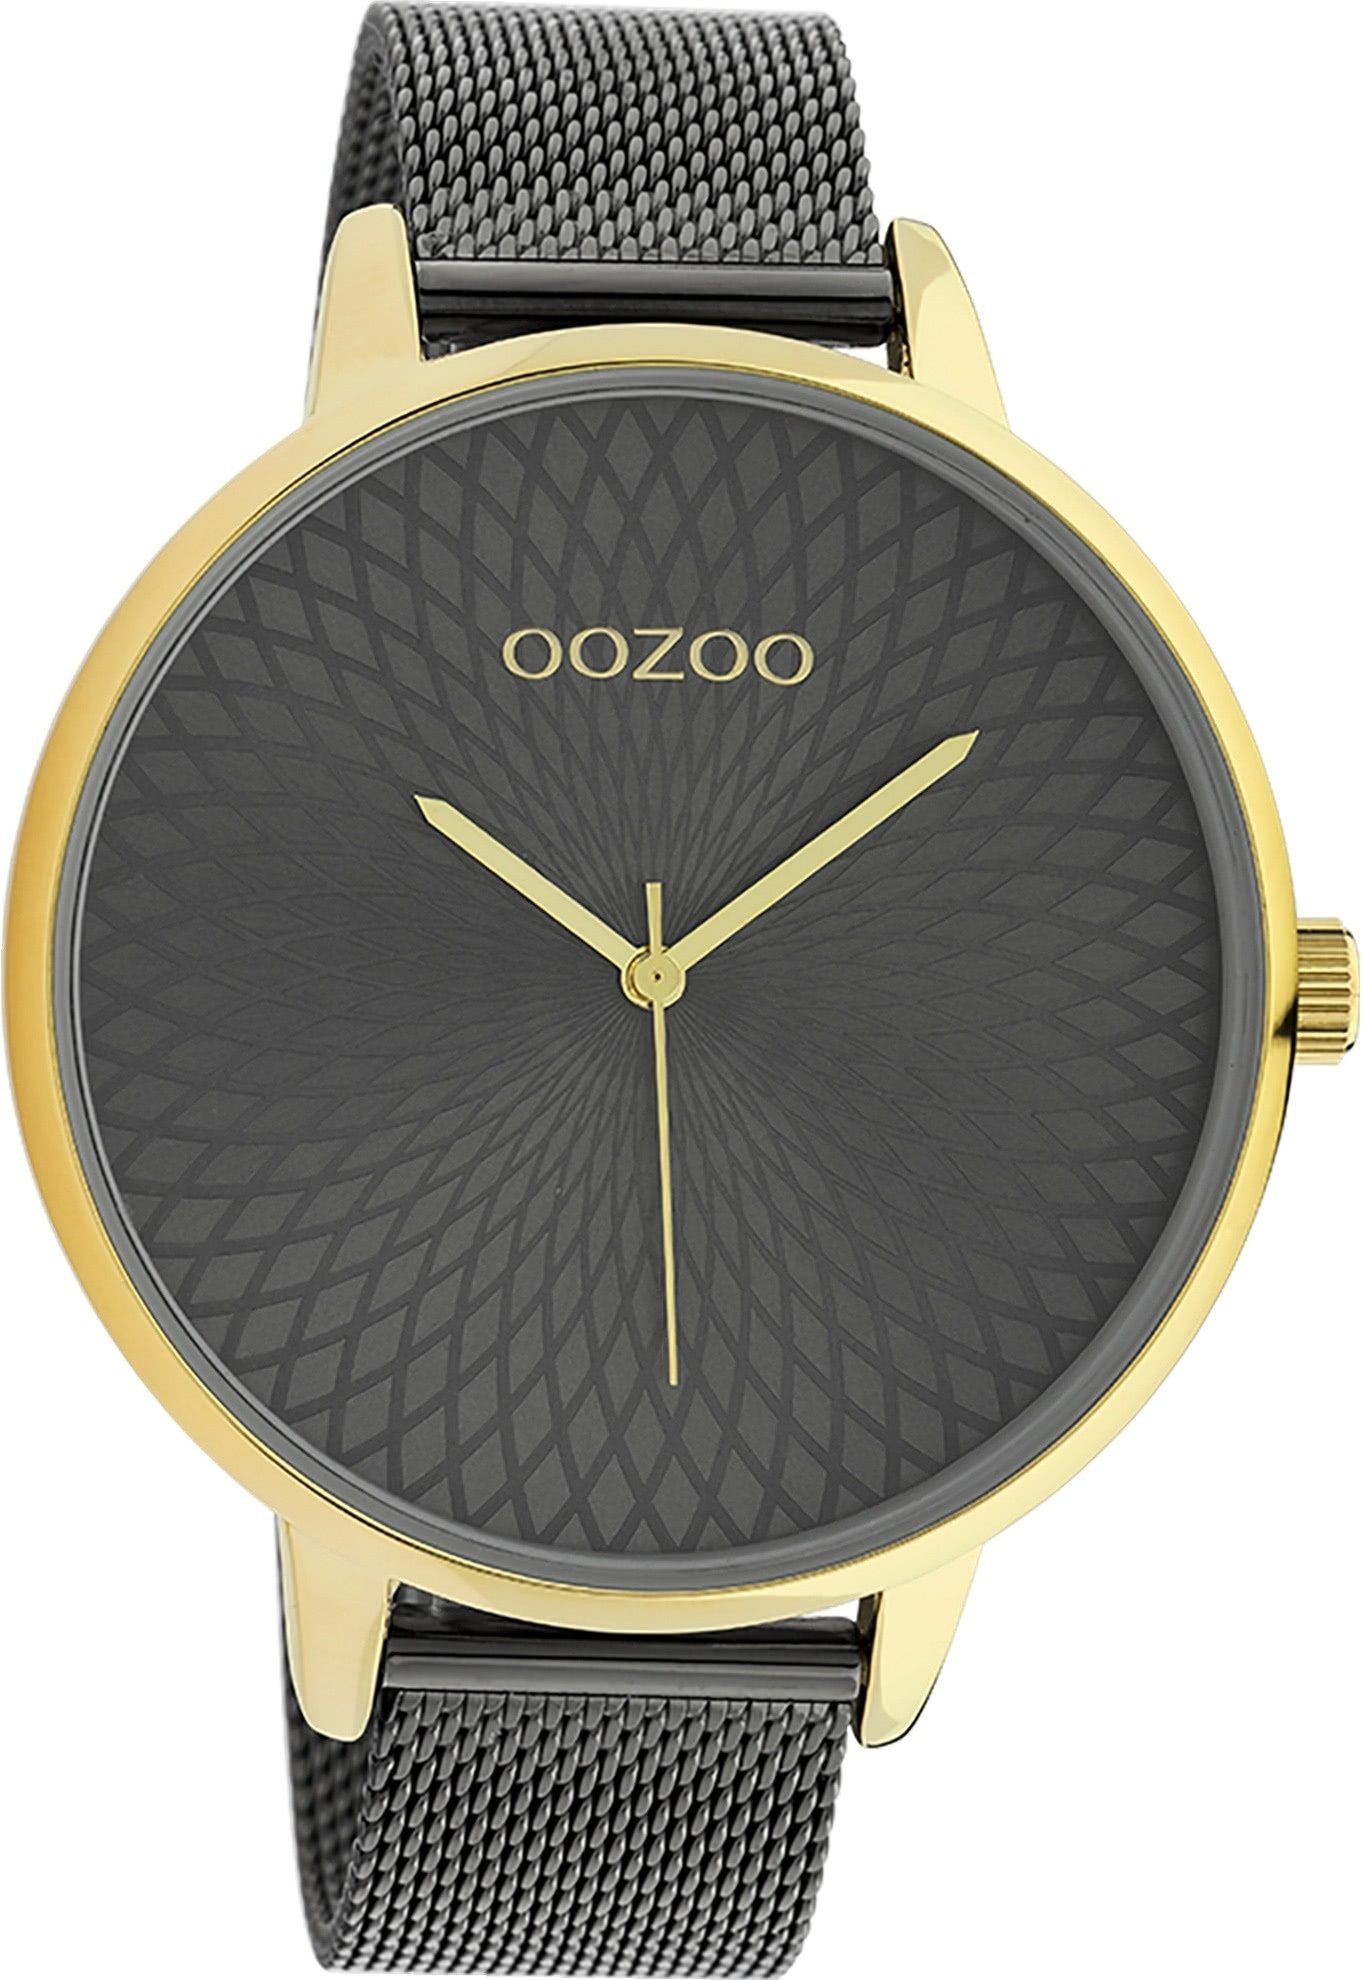 OOZOO Quarzuhr Oozoo Unisex Armbanduhr Timepieces Analog, (Analoguhr), Damen, Herrenuhr rund, extra groß (ca. 48mm) Metallarmband schwarz